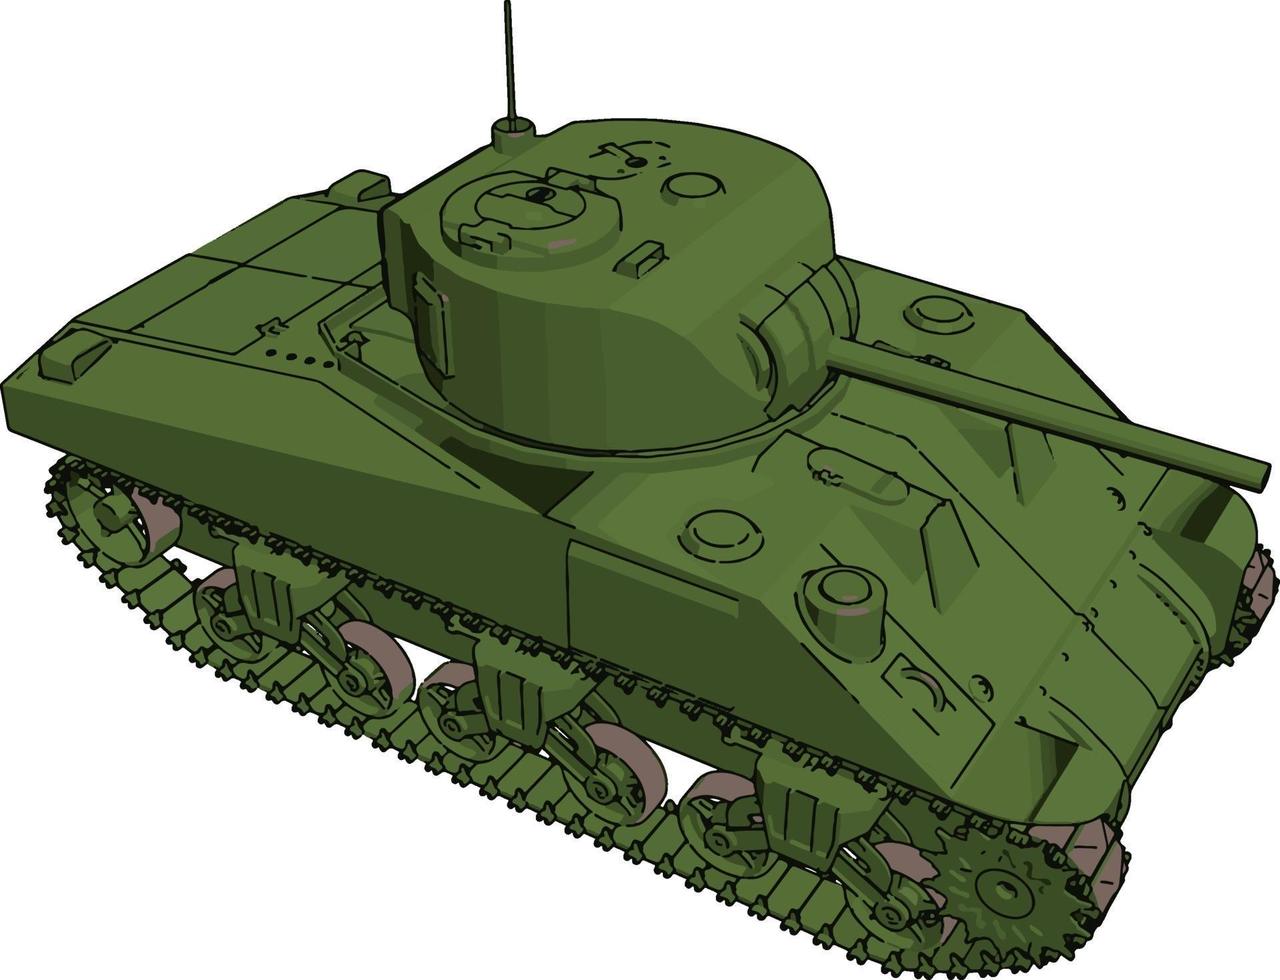 groen leger tank, illustratie, vector Aan wit achtergrond.